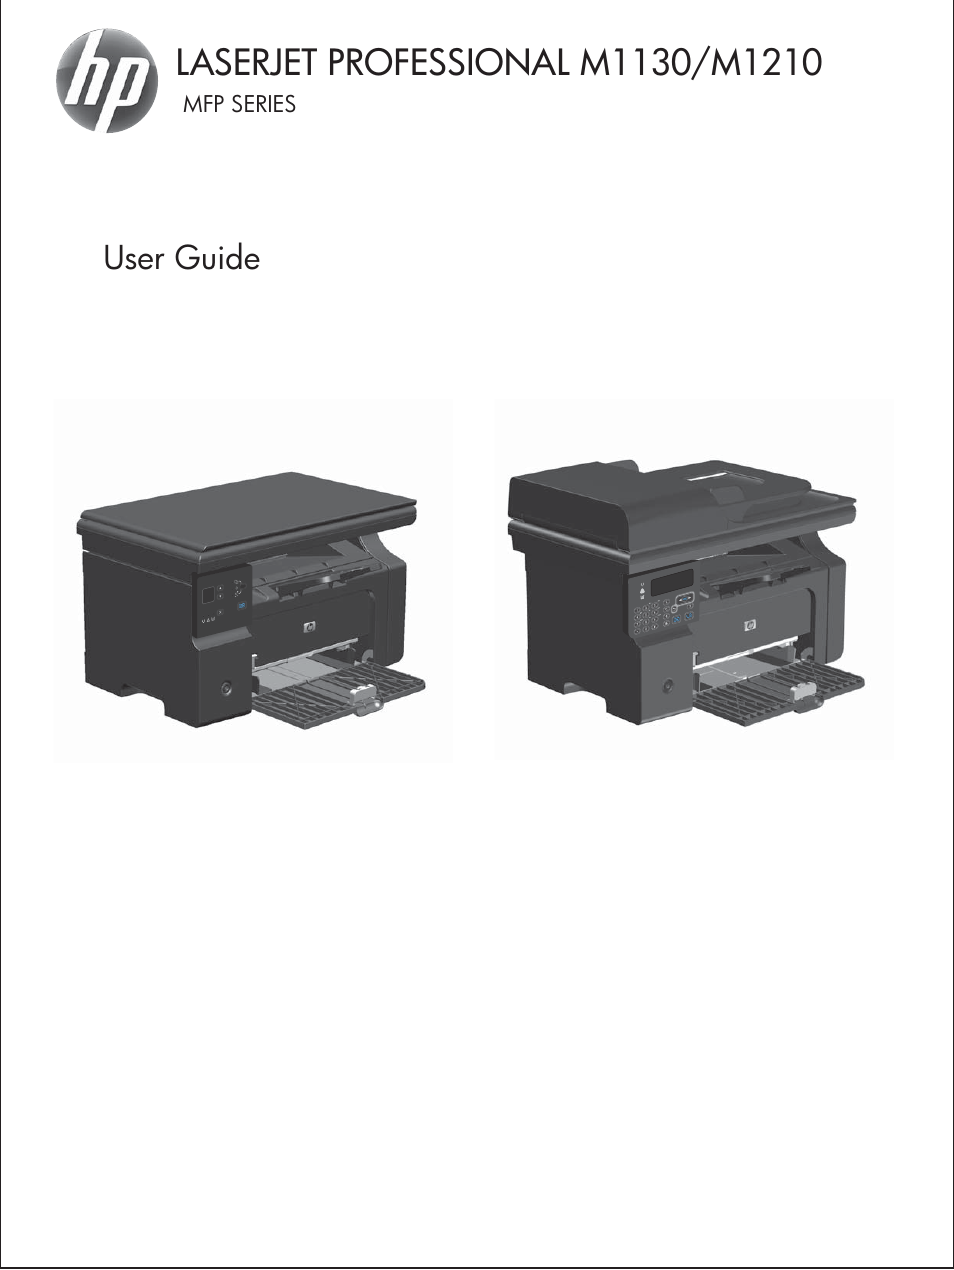 HP laserjet m1212nf User Manual | 284 pages | Also for: LaserJet  Professional m1212nf MFP SERIES, LaserJet Professional M1130 MFP SERIES,  LaserJet Professional M1210 MFP SERIES